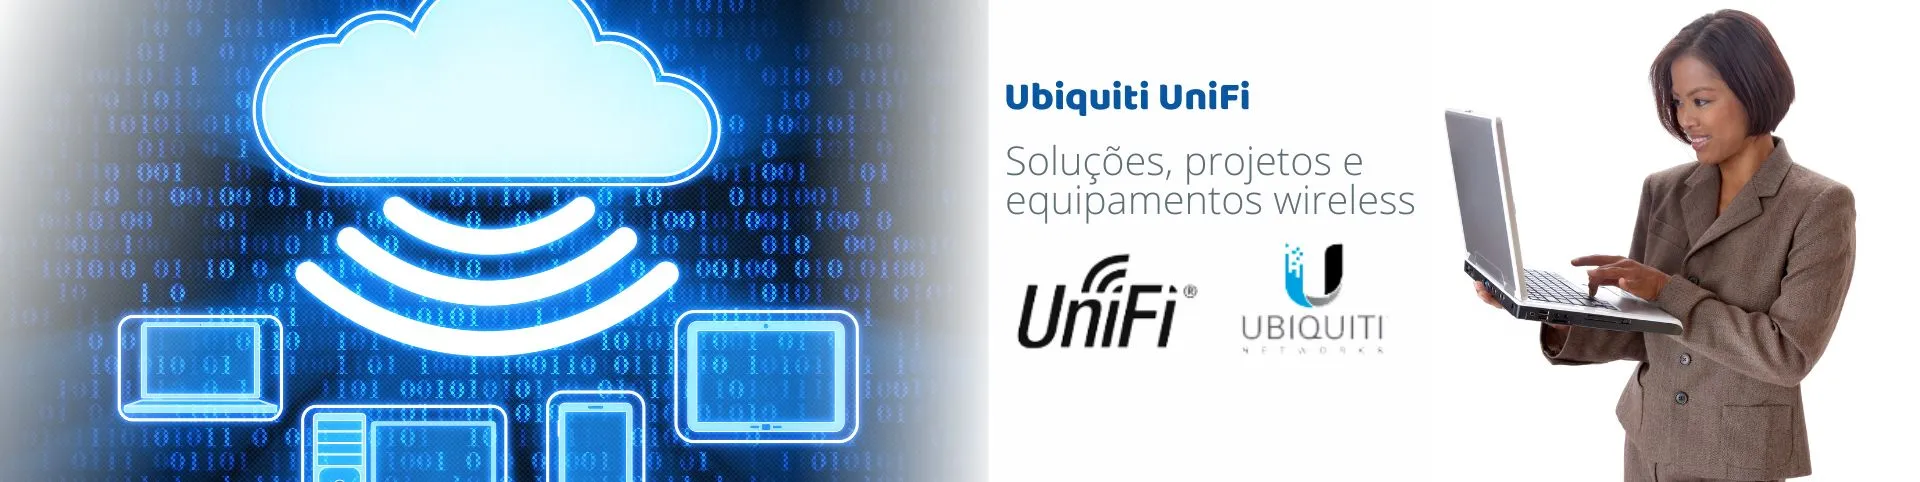 NetSol_Ubiquiti_Unifi